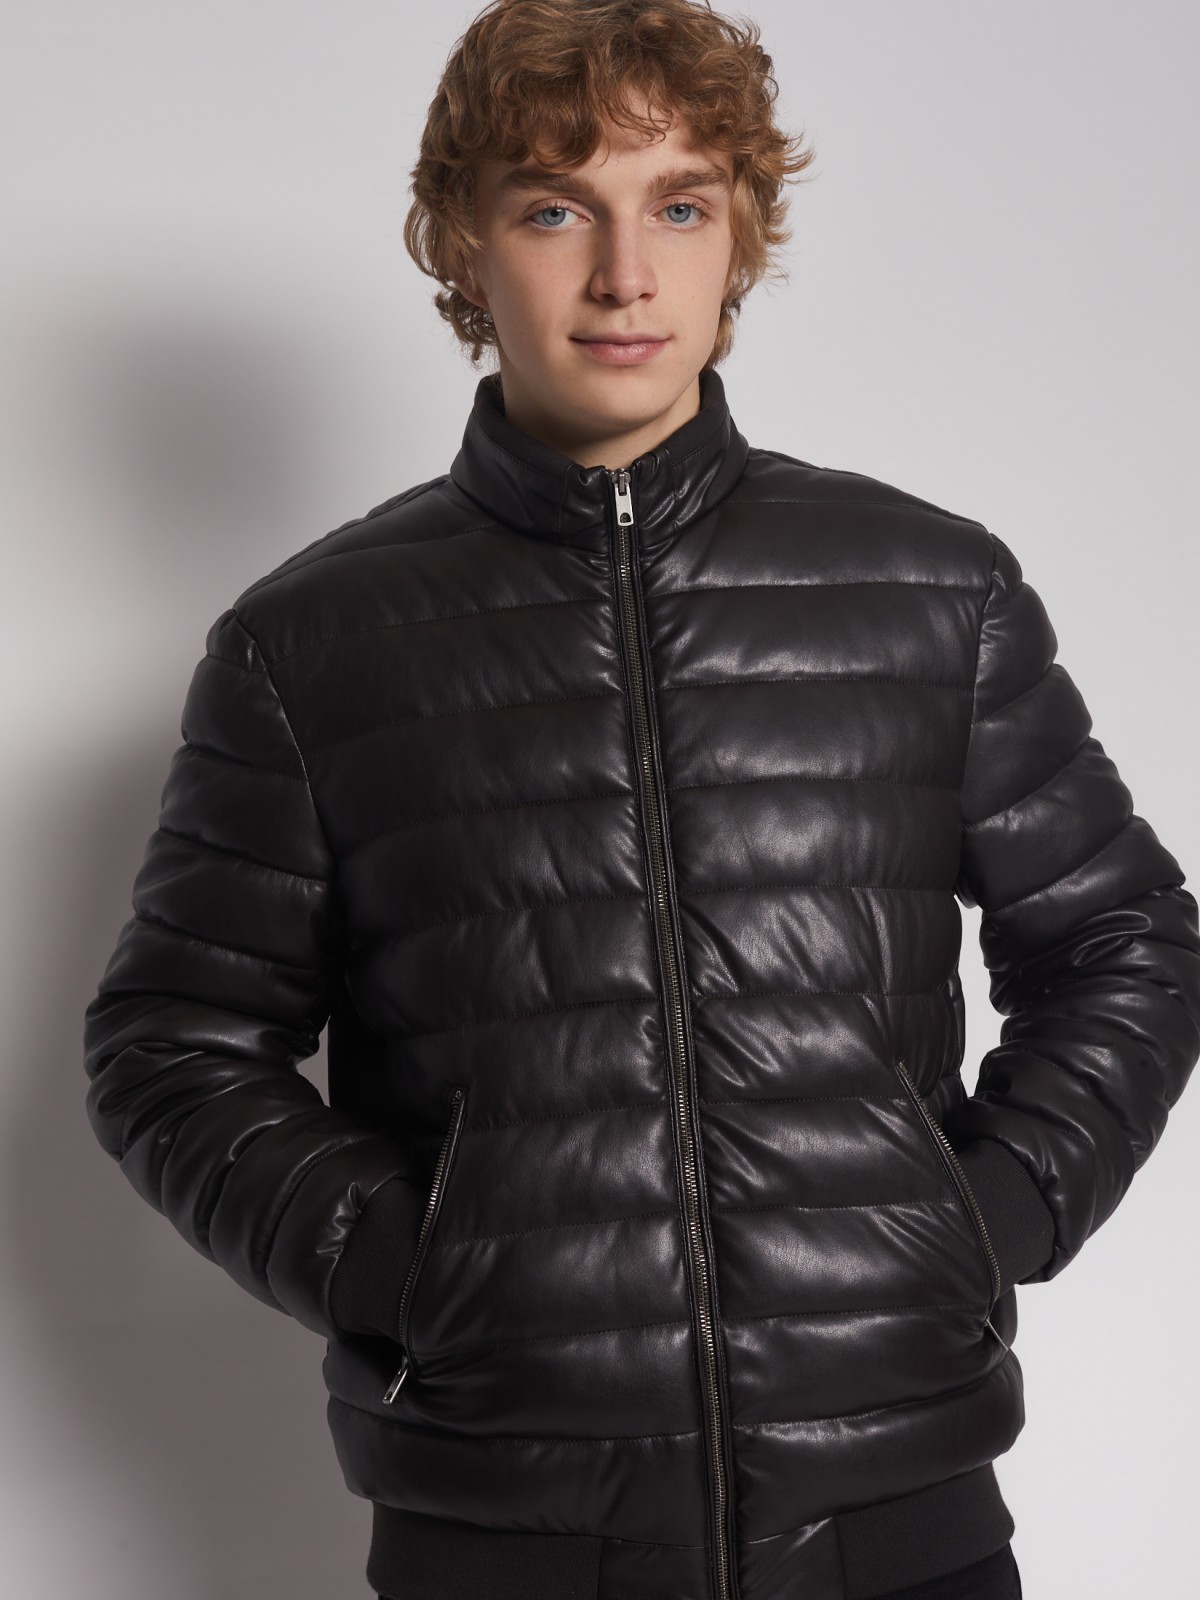 Утеплённая куртка-бомбер из экокожи zolla 013125150064, цвет коричневый, размер M